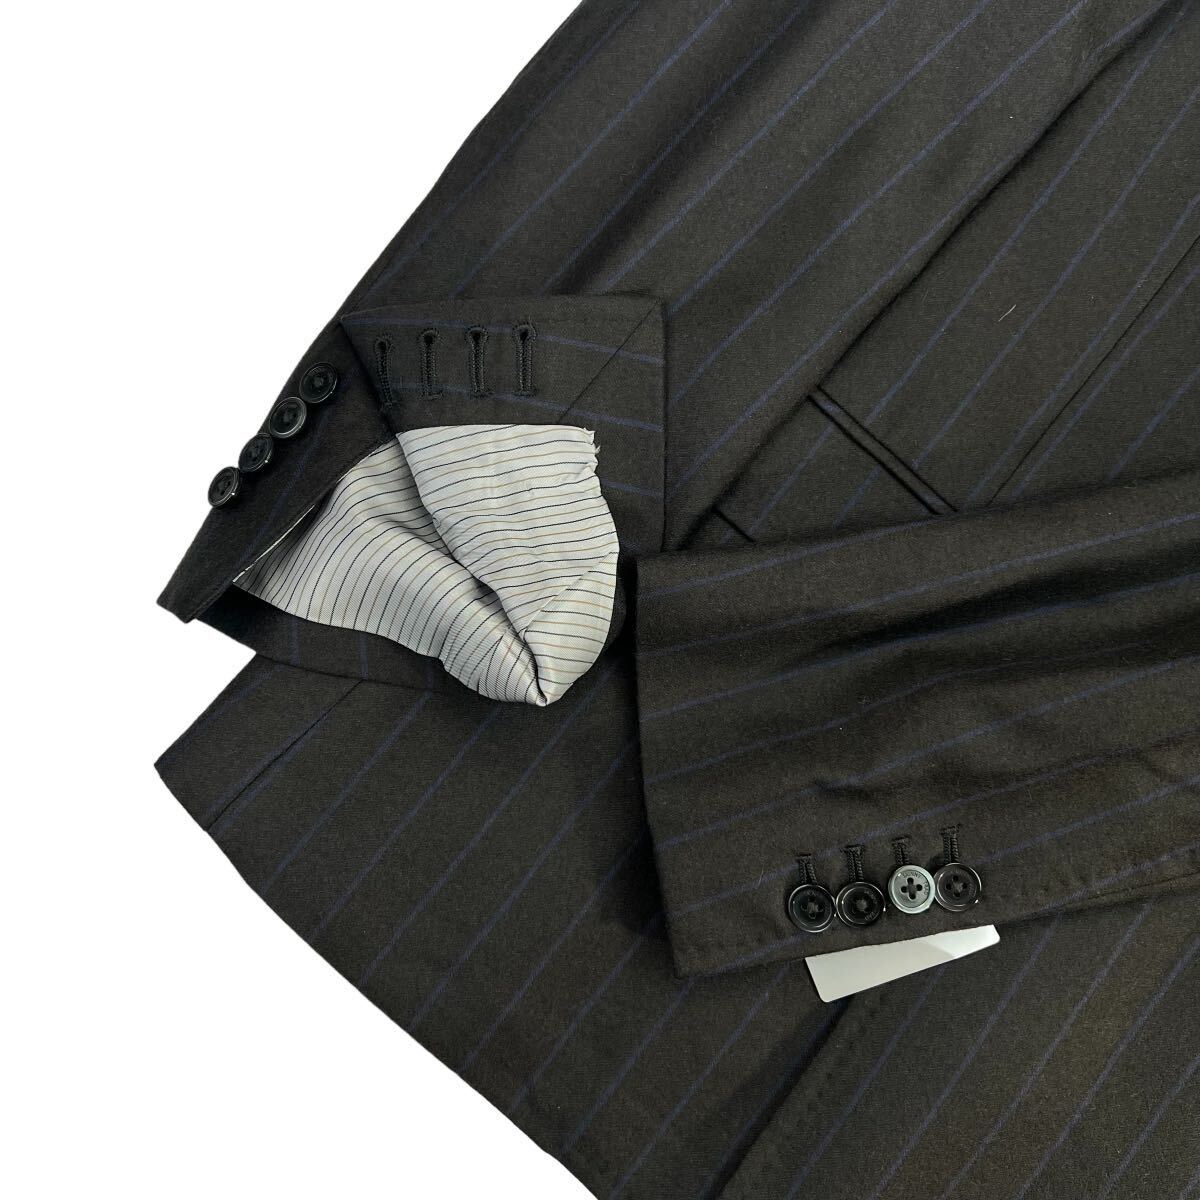  новый товар THE SUIT COMPANY×marzotto The костюм Company maru zoto двойной Puresuto костюм размер AB6/L-XL соответствует чёрный . близкий серый с биркой A2280